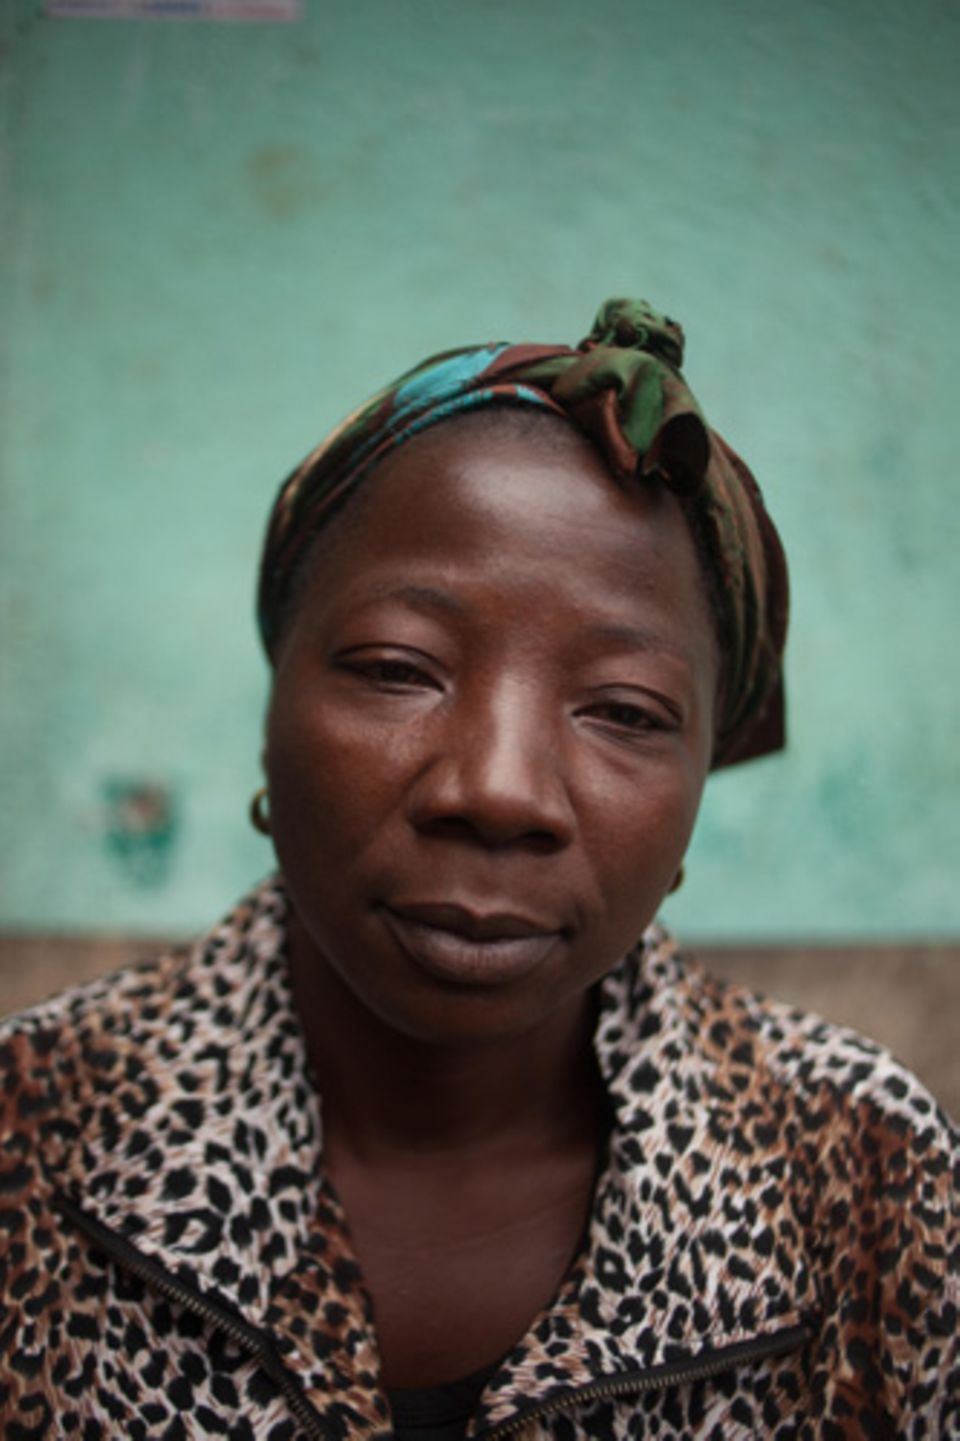 Ihr Bruder liegt in einem der Ebola-Versorgungszentren. Sie möchte ihn besuchen, selbst wenn sie daran stirbt.